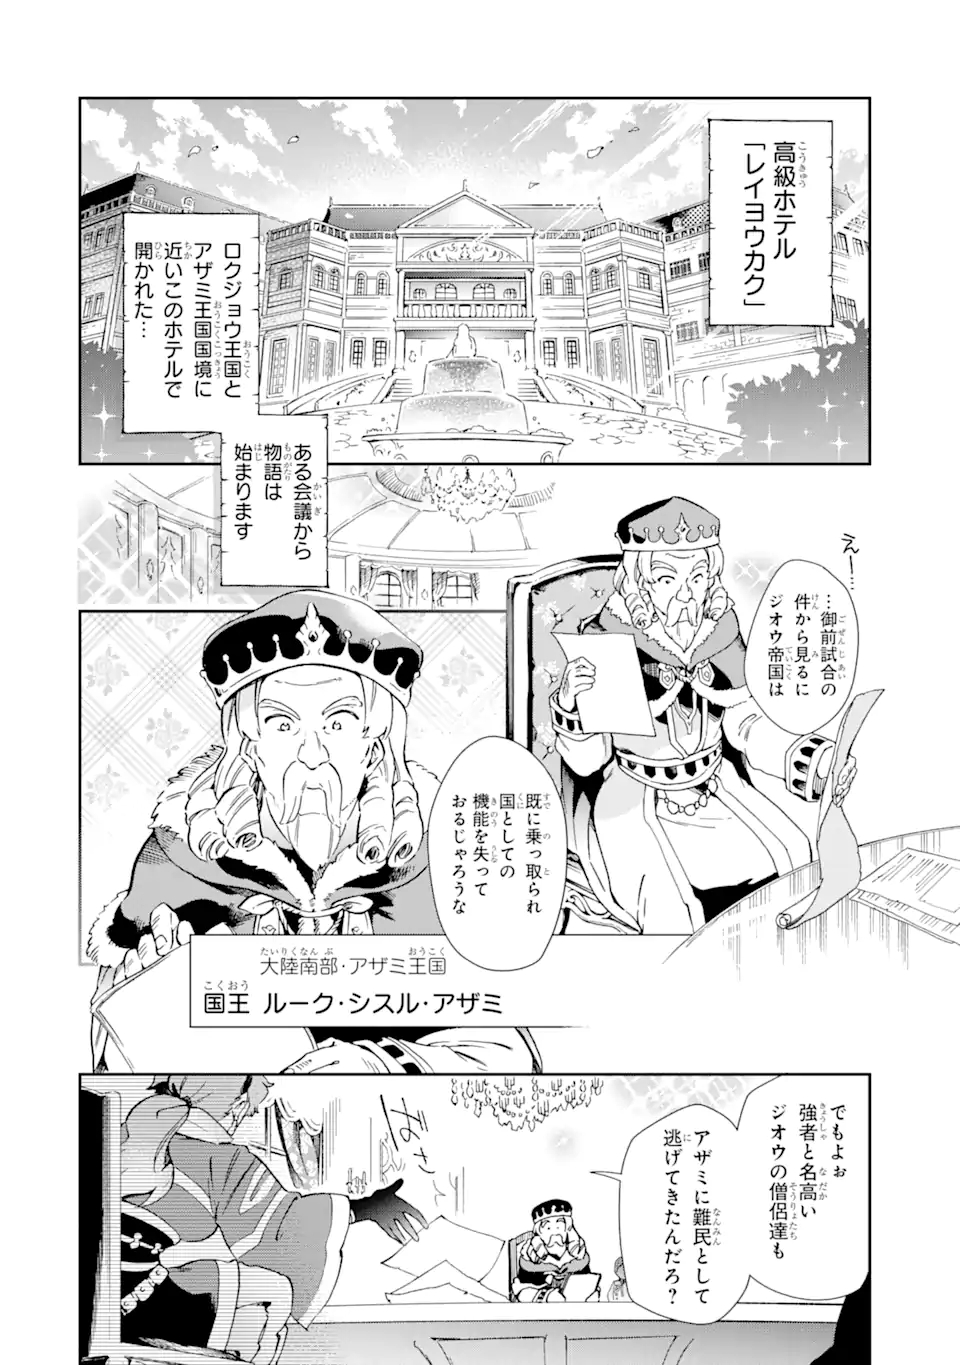 Tatoeba Last Dungeon Mae no Mura no Shounen ga Joban no Machi de Kurasu  Youna Monogatari Archives - Garotas Que Curtem Animes